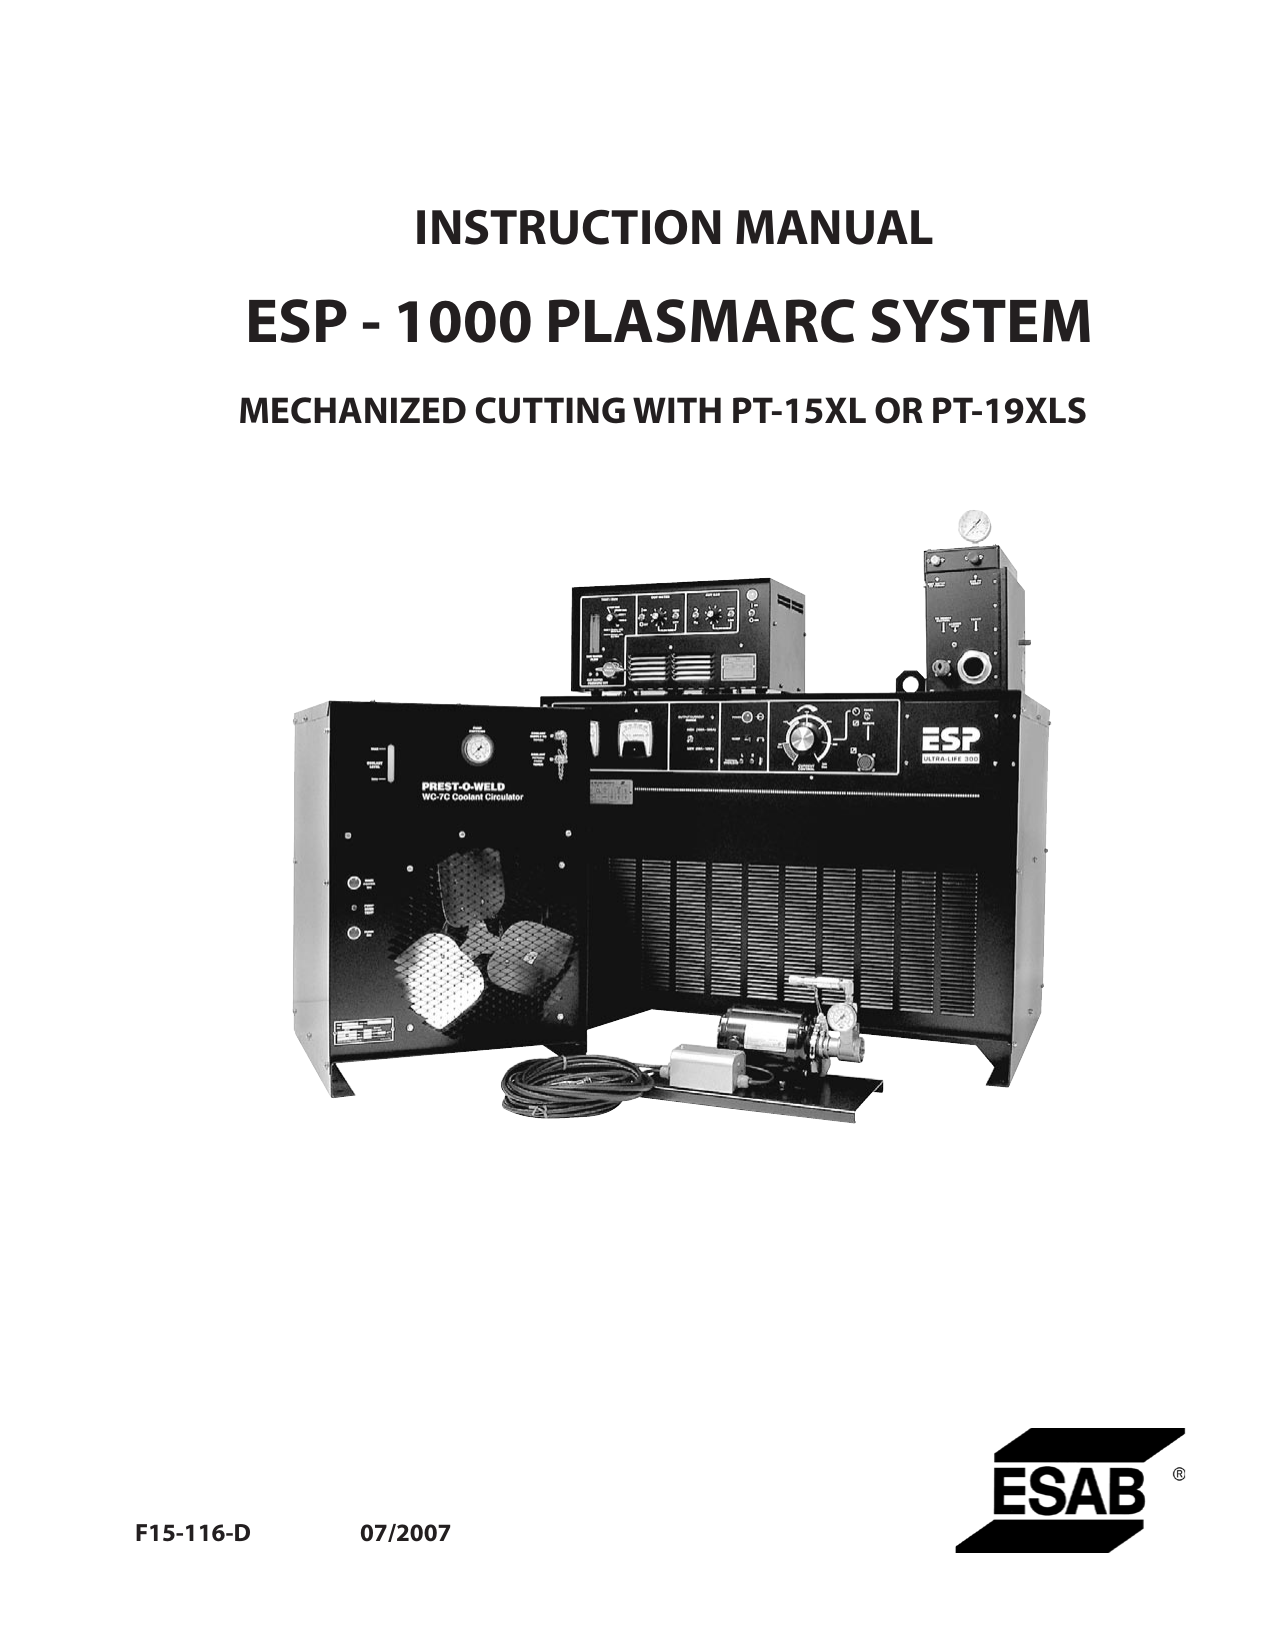 ESP-1000 Plasmarc System